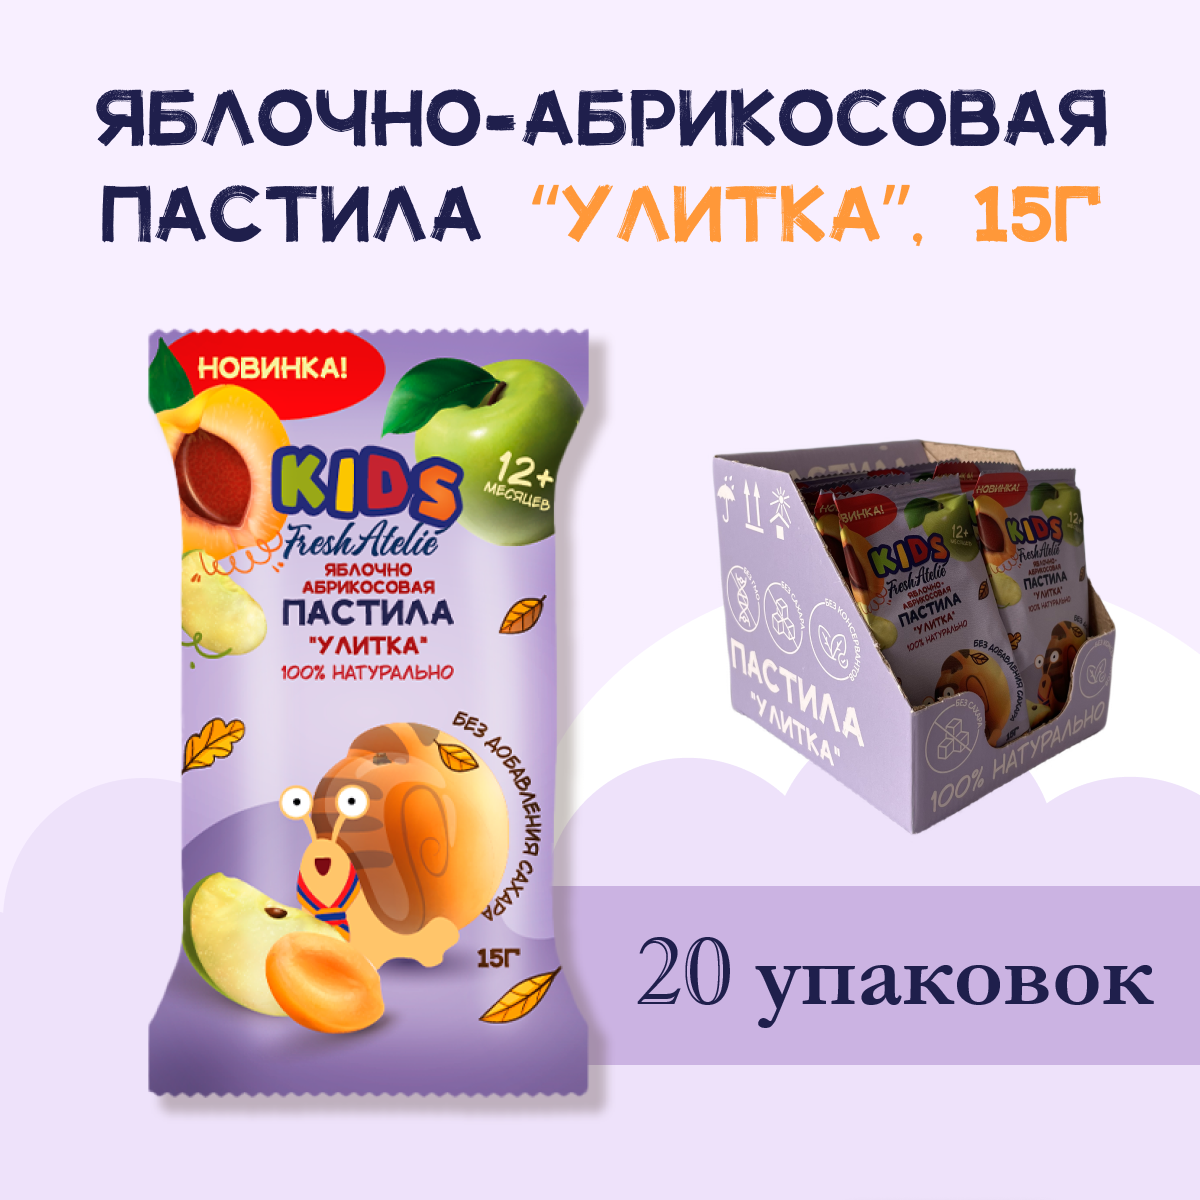 Пастила Яблочно-Абрикосовая для детей FRESH ATELIE KIDS Улитка 15гр, 20 упаковок